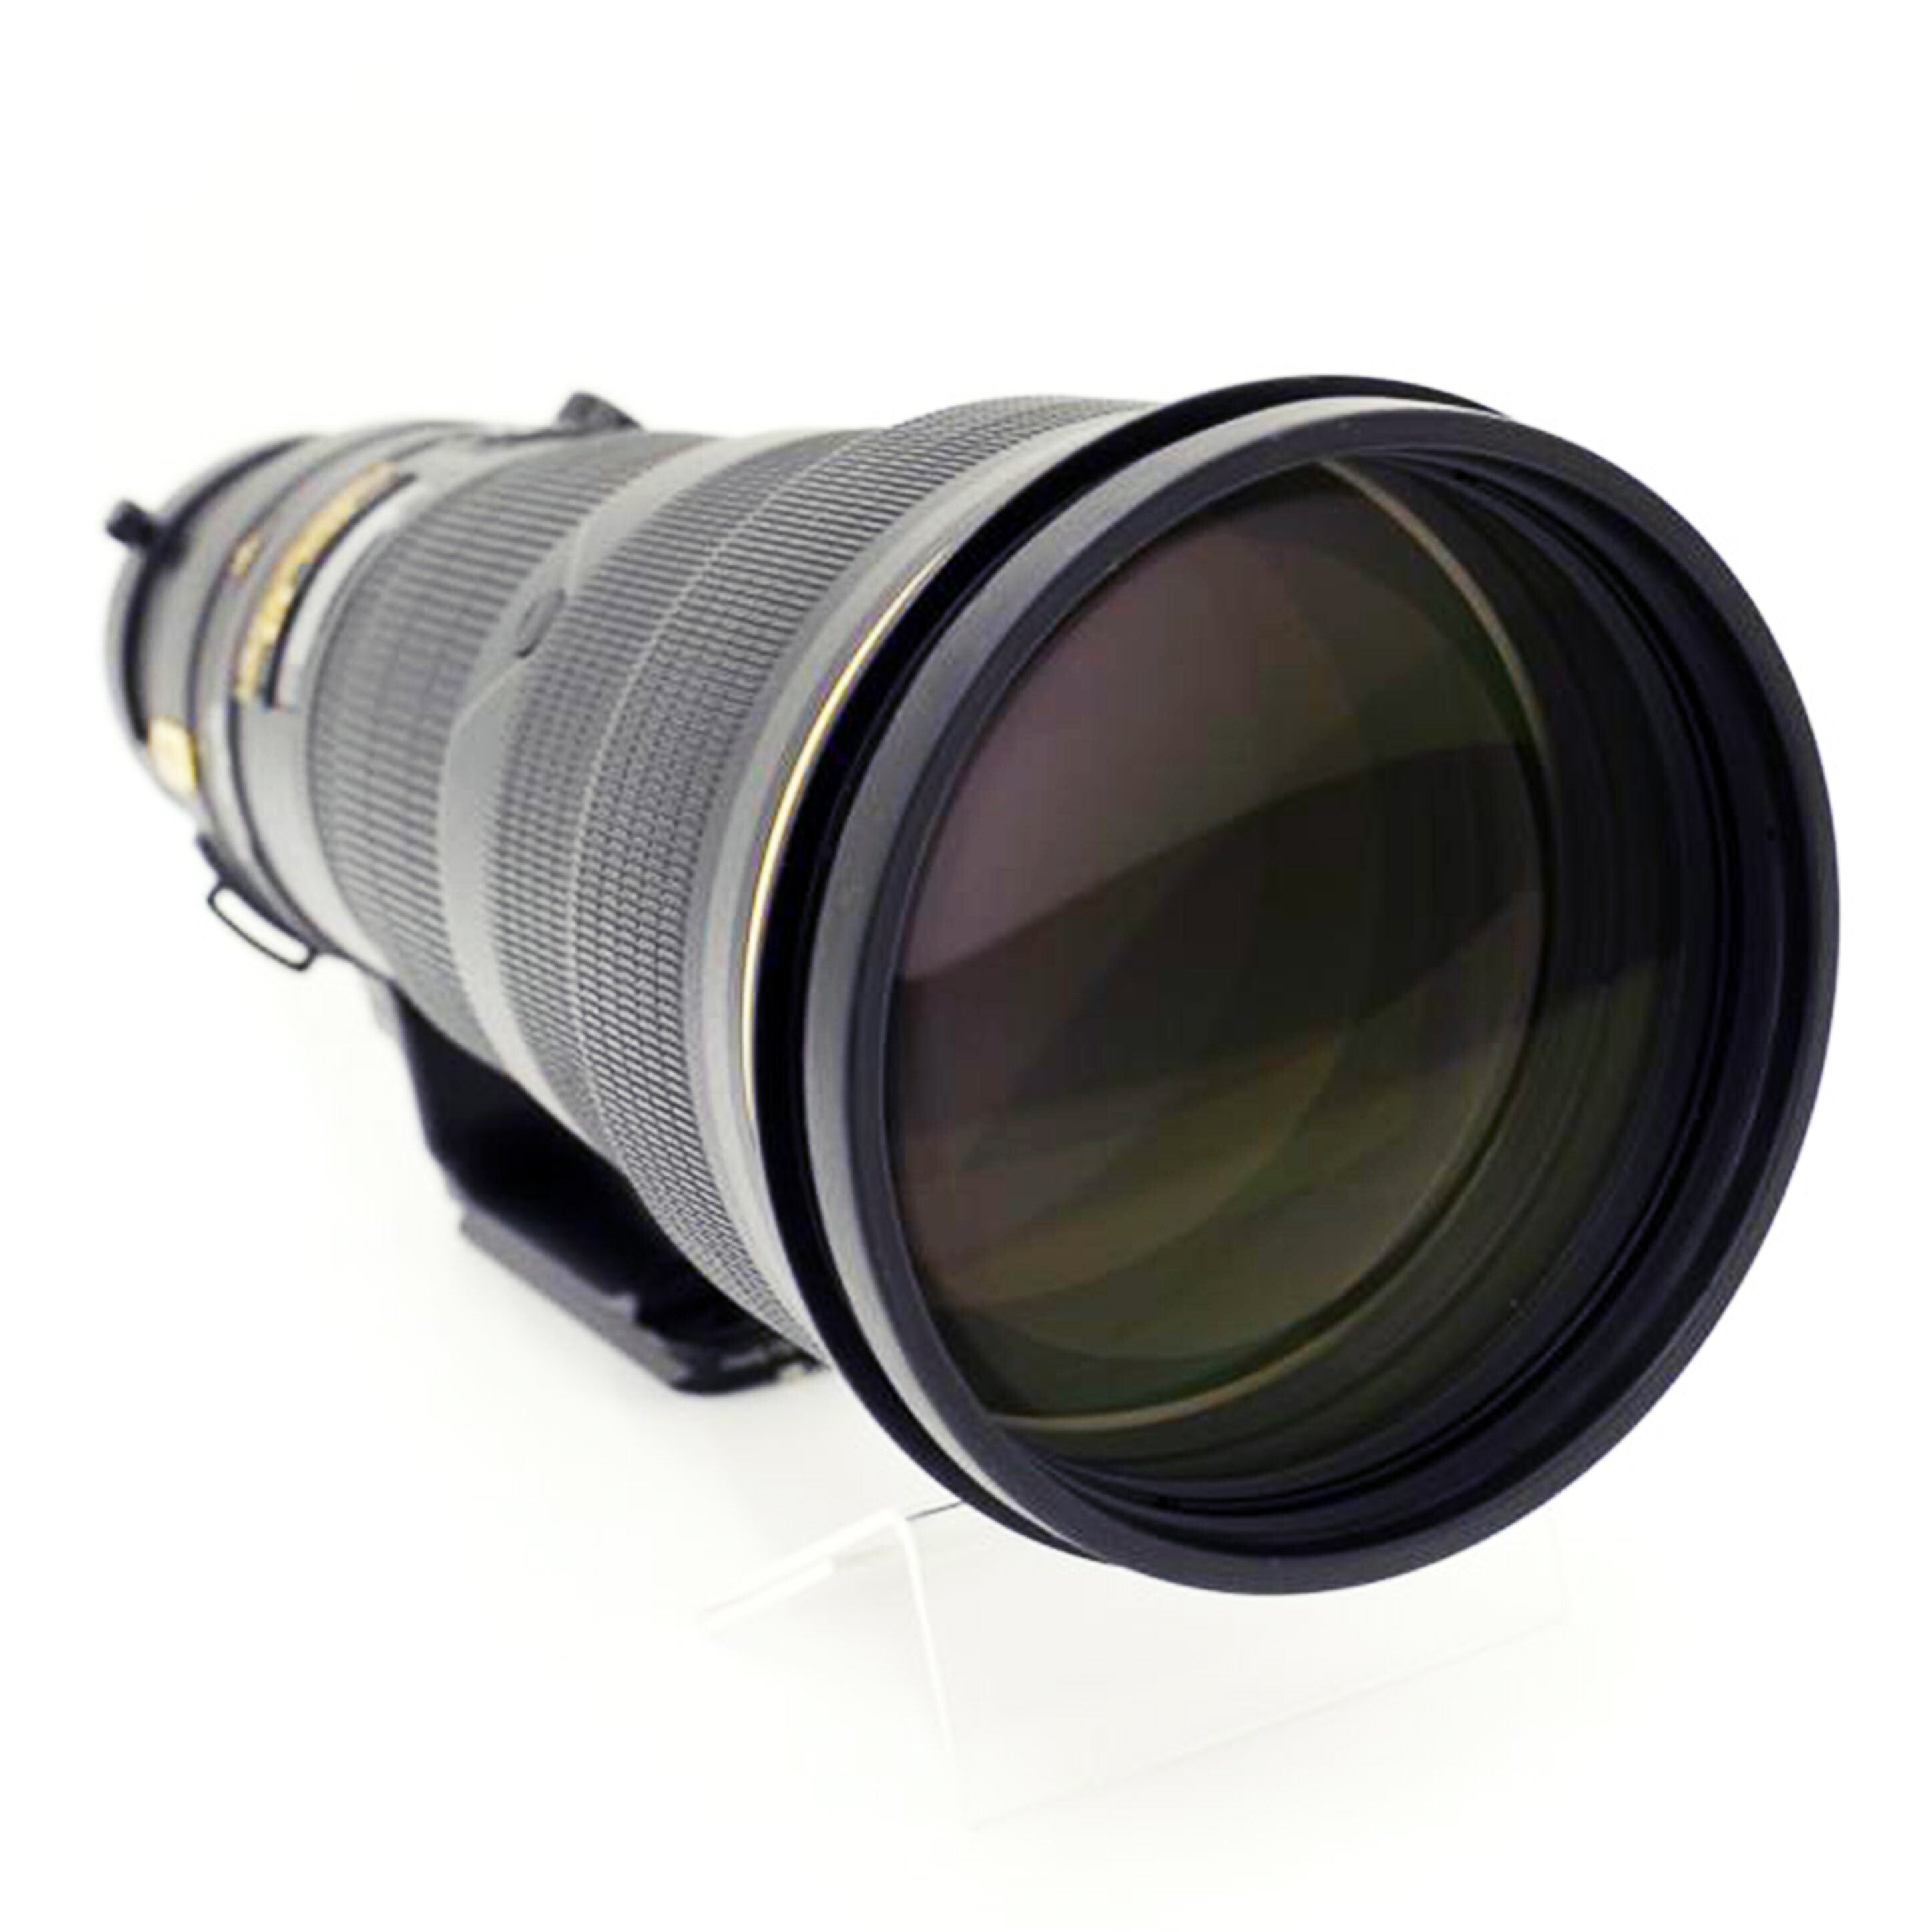 Nikon ニコン/デジタル対応レンズ/AF-S NIKKOR 500mm f/4G ED VR//205910/ABランク/69